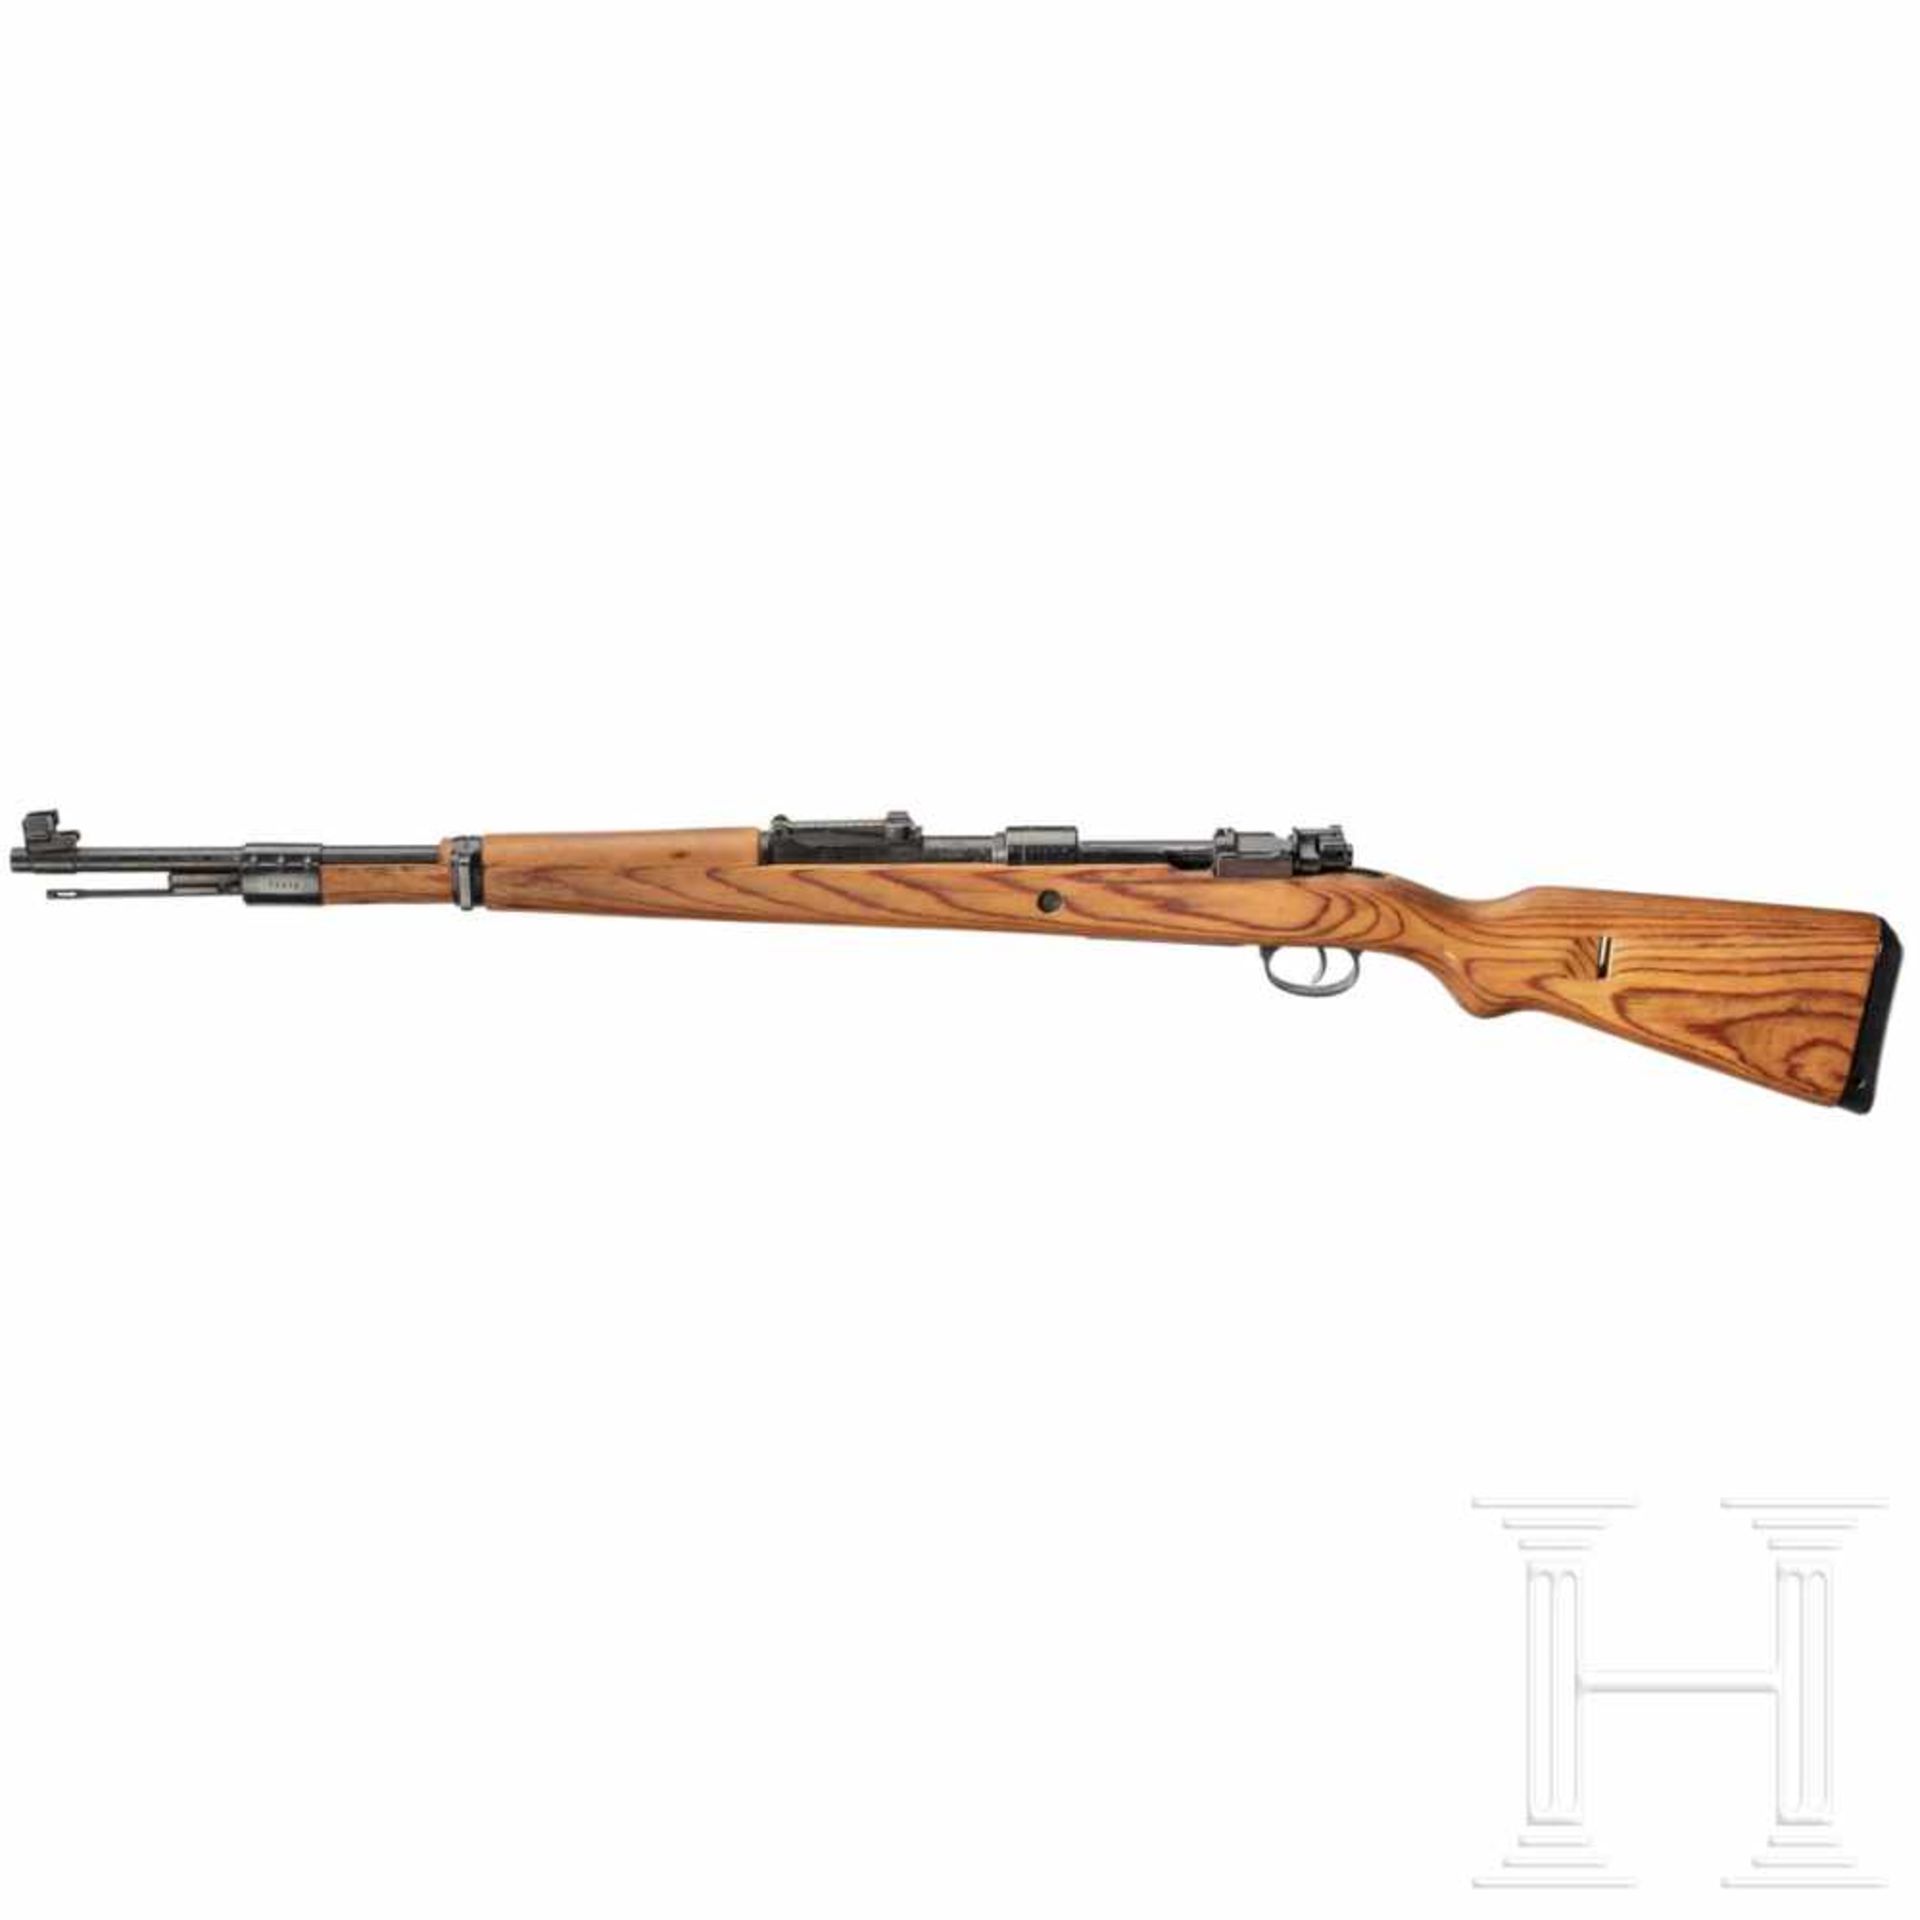 A carbine 98 k, code "swp - 45"Kal. 8x57 IS, Nr. 73376a, nummerngleich bis auf Visierblatt. - Bild 3 aus 3